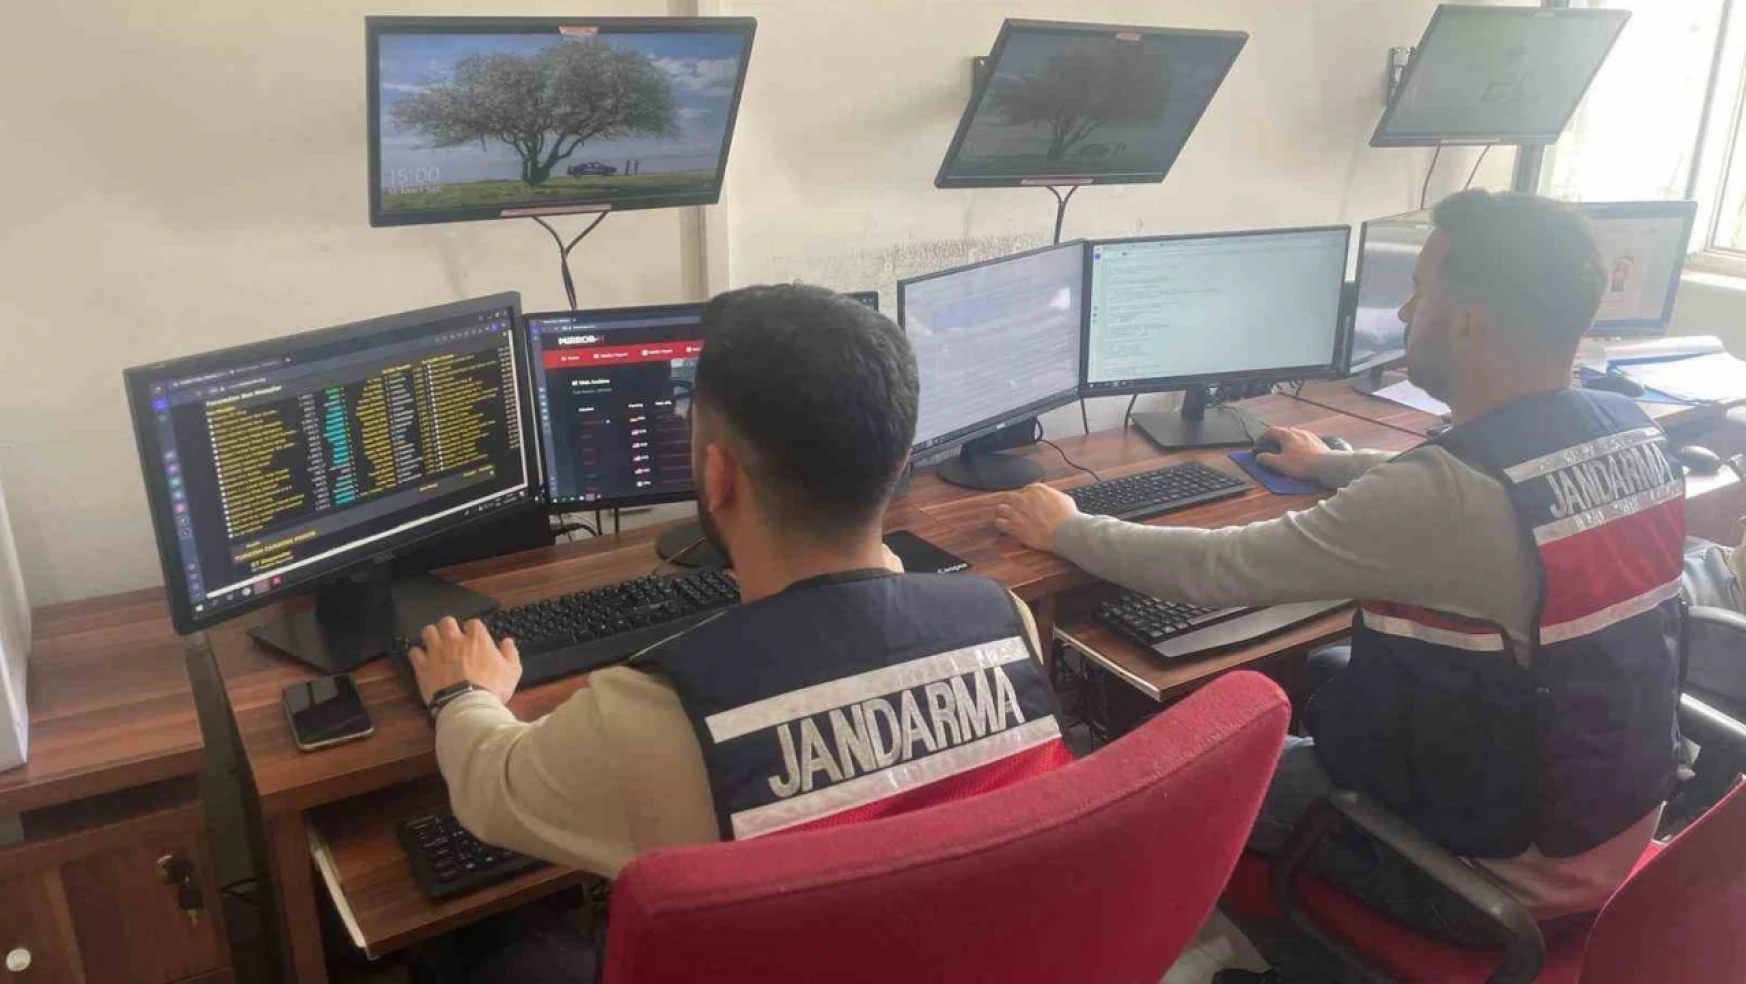 Aydın'da jandarma ekipleri siber suçlara yönelik çalışmalarını sürdürüyor